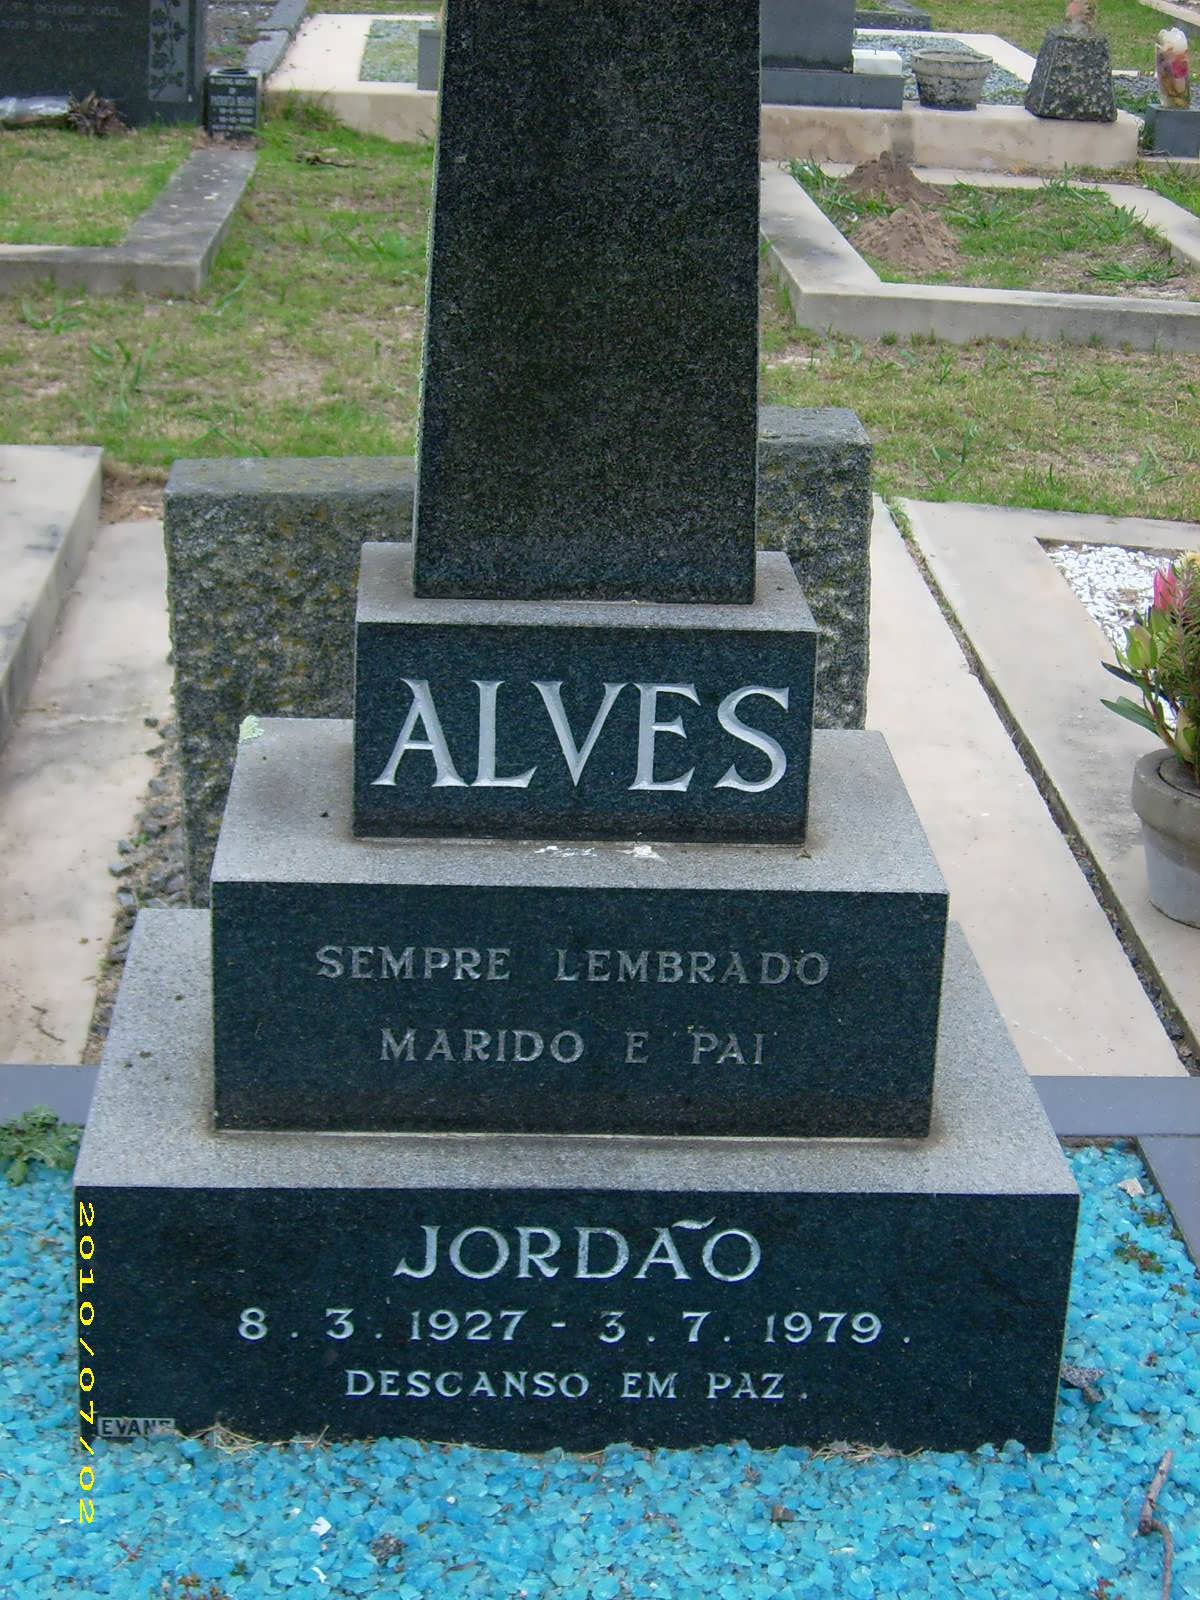 ALVES Jordao 1927-1979